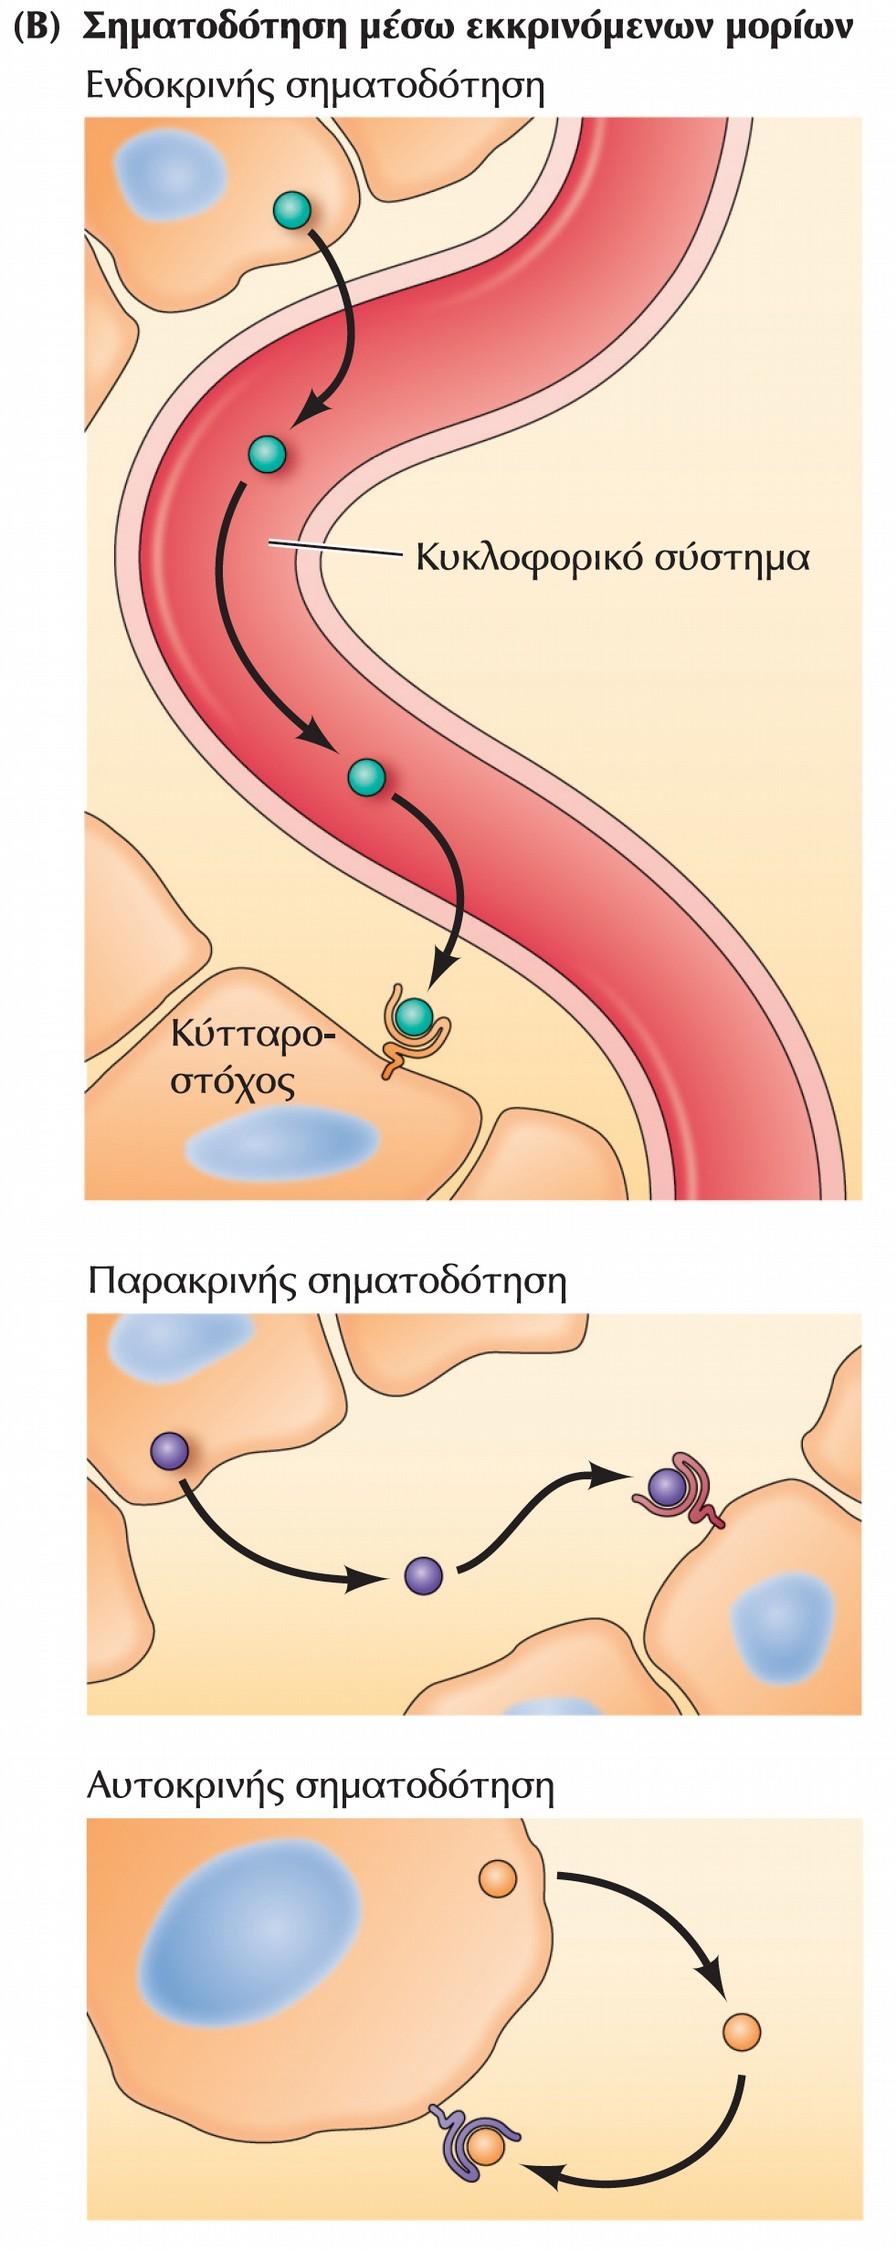 Μηχανισμοί διακυτταρικής σηματοδότησης. Η διακυτταρική σηματοδότηση μπορεί να συμβαίνει (Β) μέσω της δράσης εκκρινόμενων σηματοδοτικών μορίων.